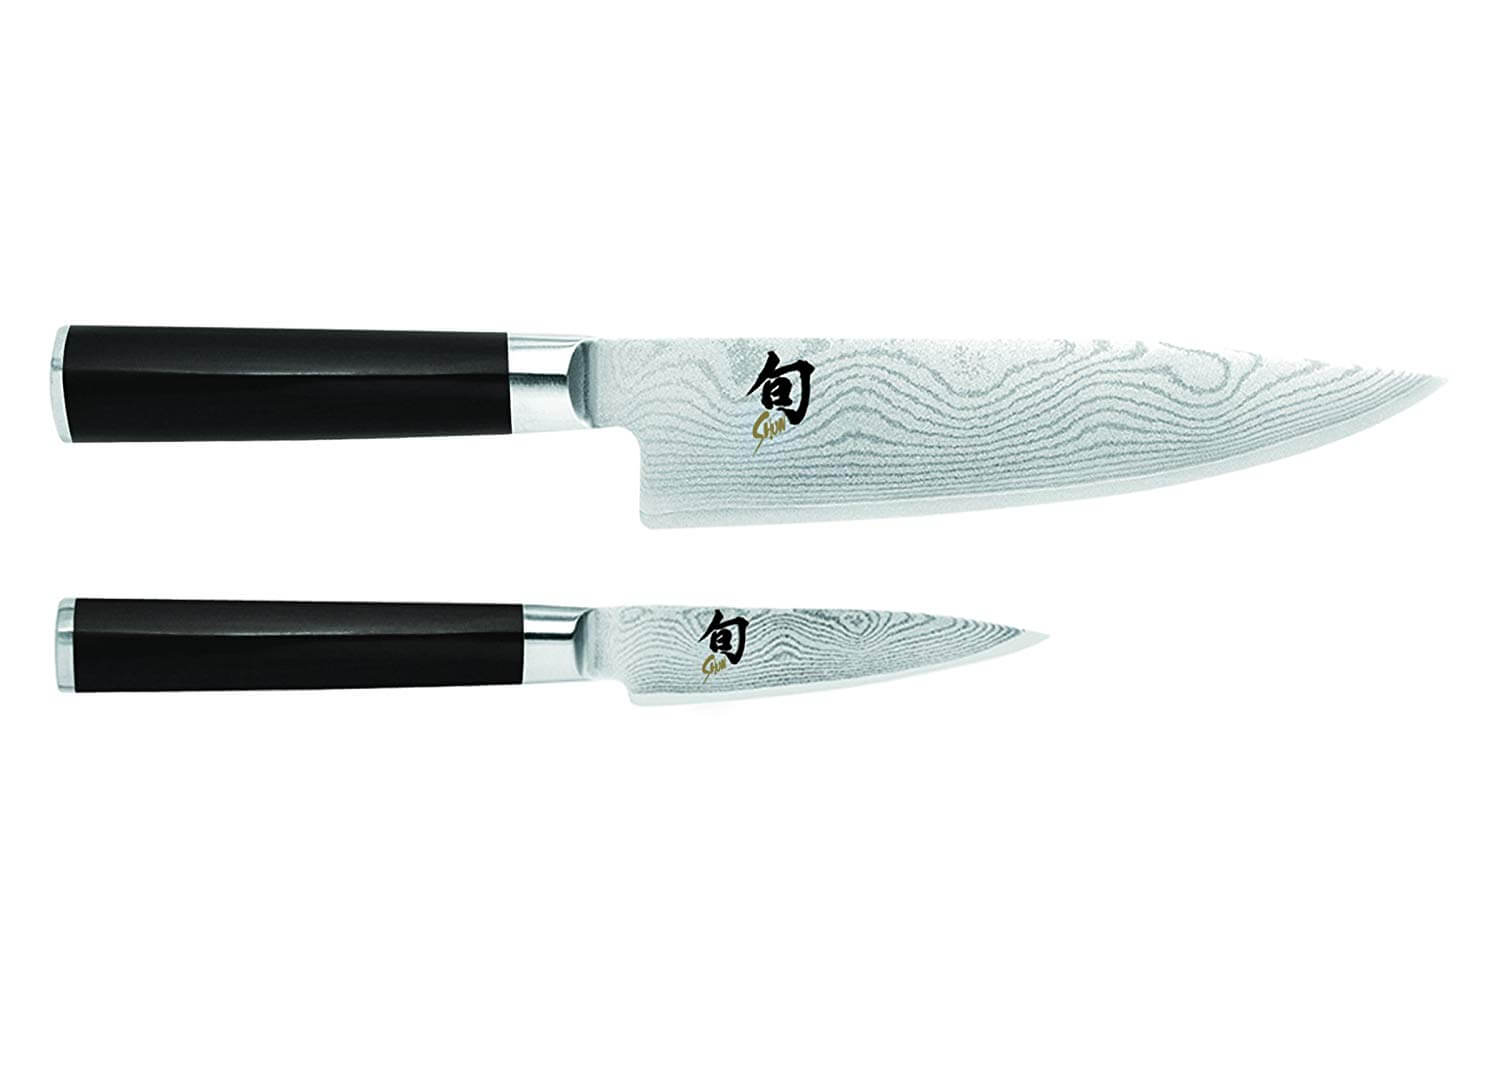 Shun DMS284 Classic Knife Set